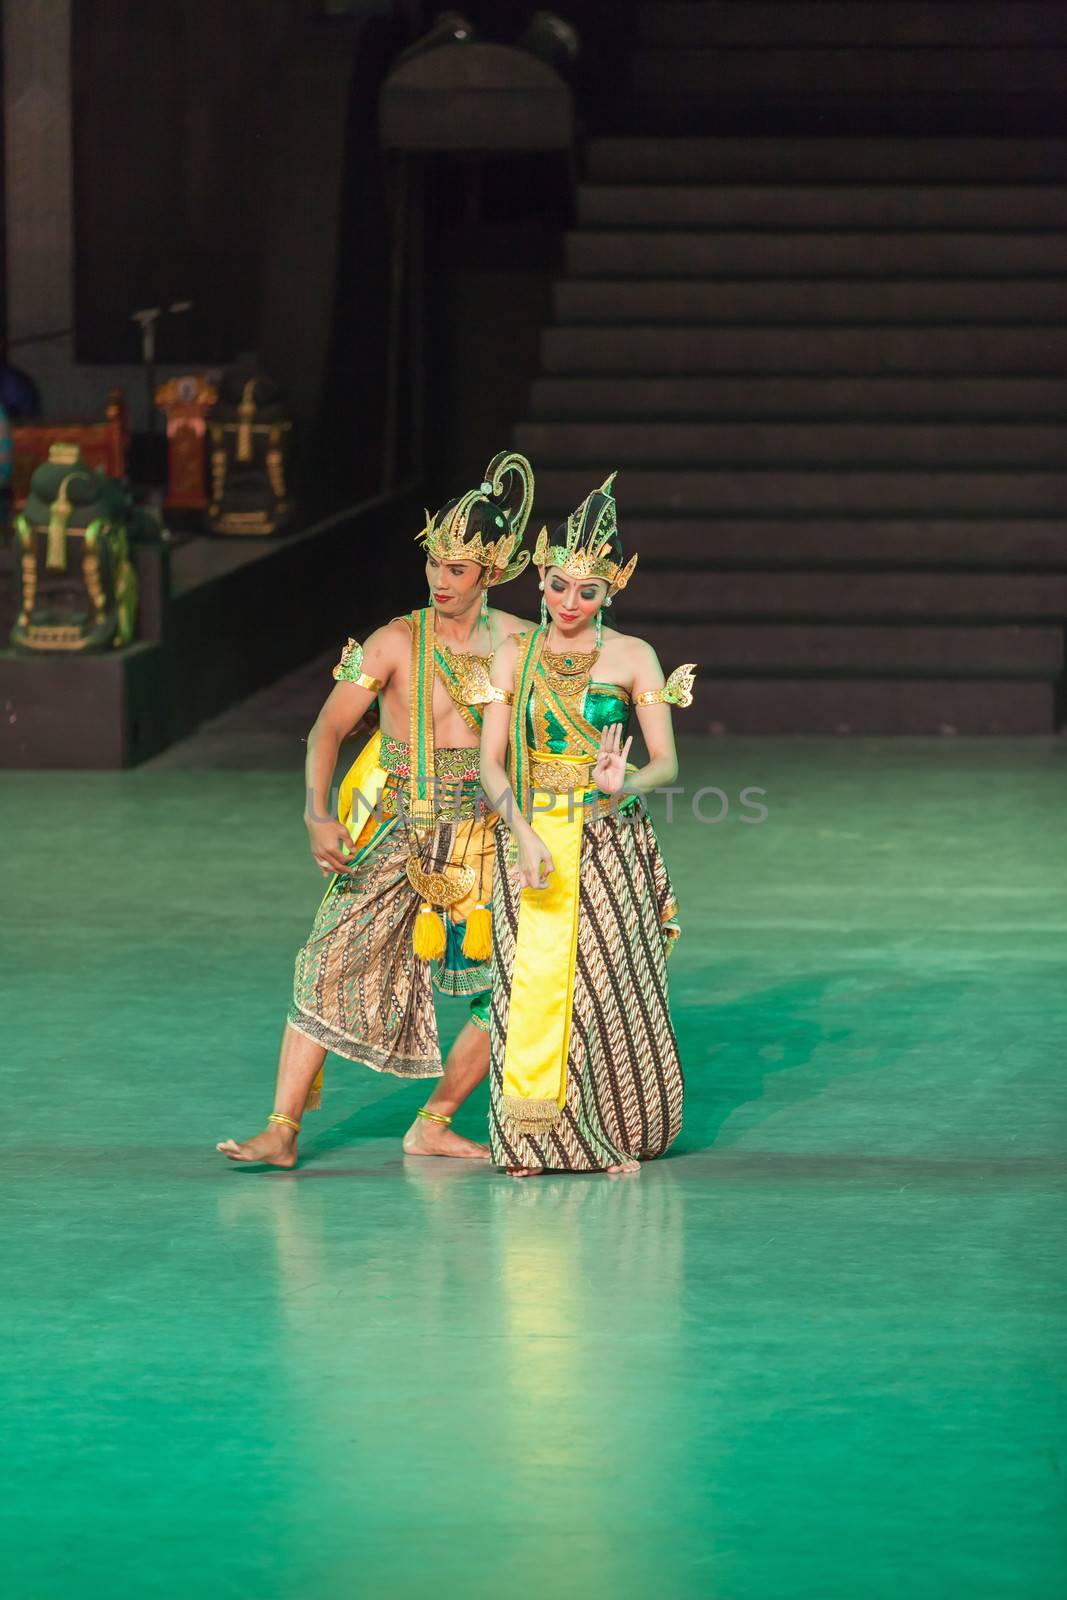 Ramayana Ballet at at Prambanan, Indonesia by iryna_rasko